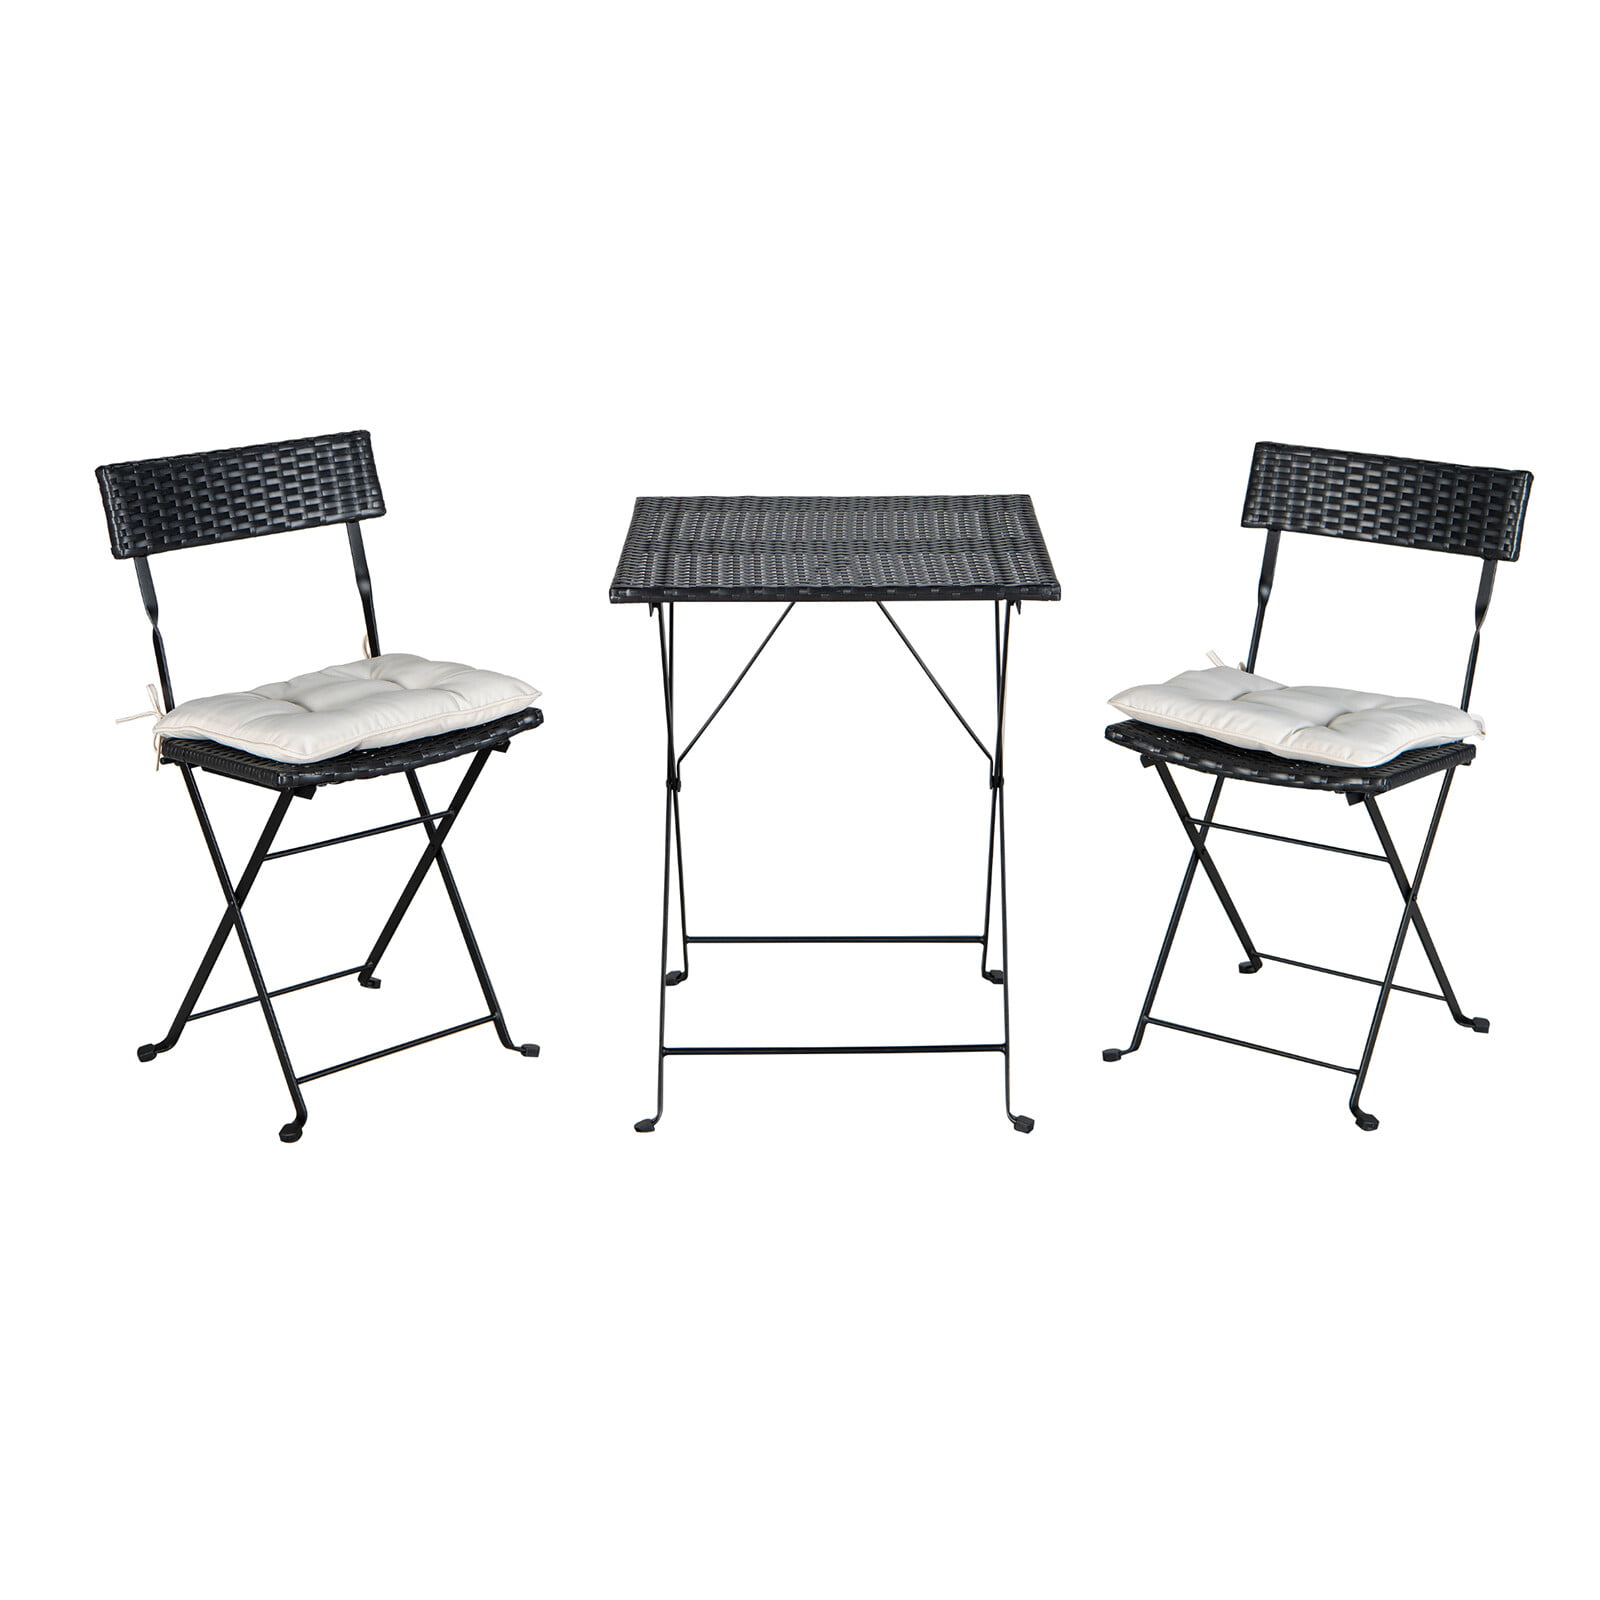 Black GoTeam Portable Reclining Anywhere Chair 